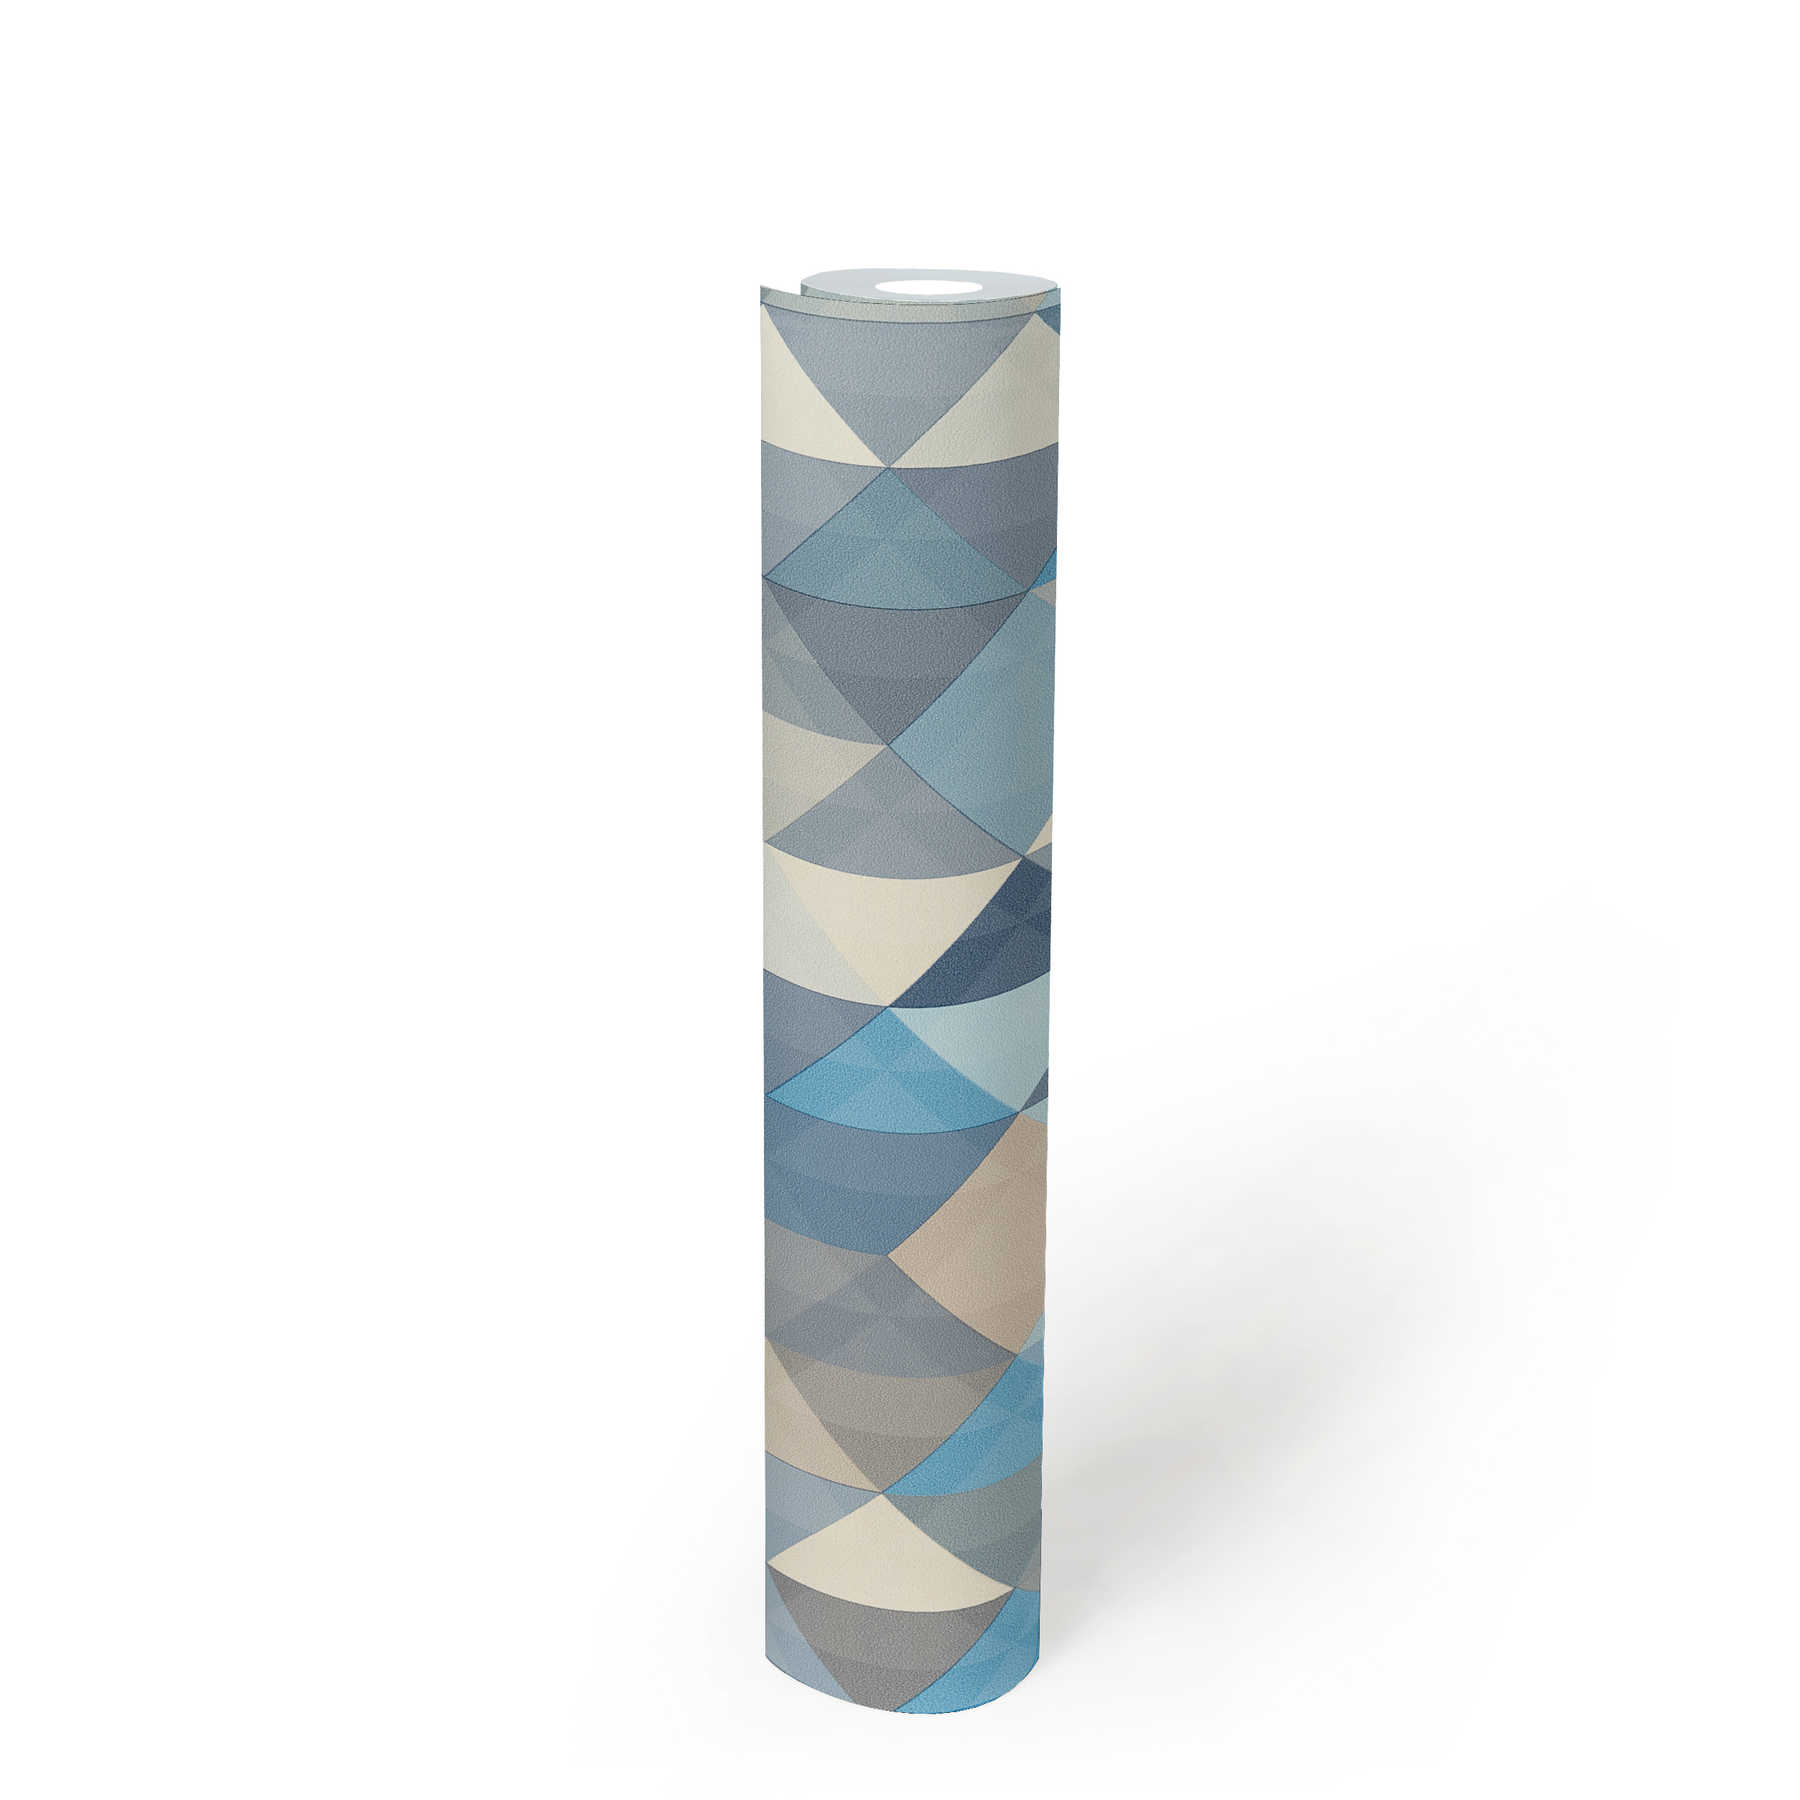             Papier peint Scandinavian Style à motifs géométriques - bleu, gris, beige
        